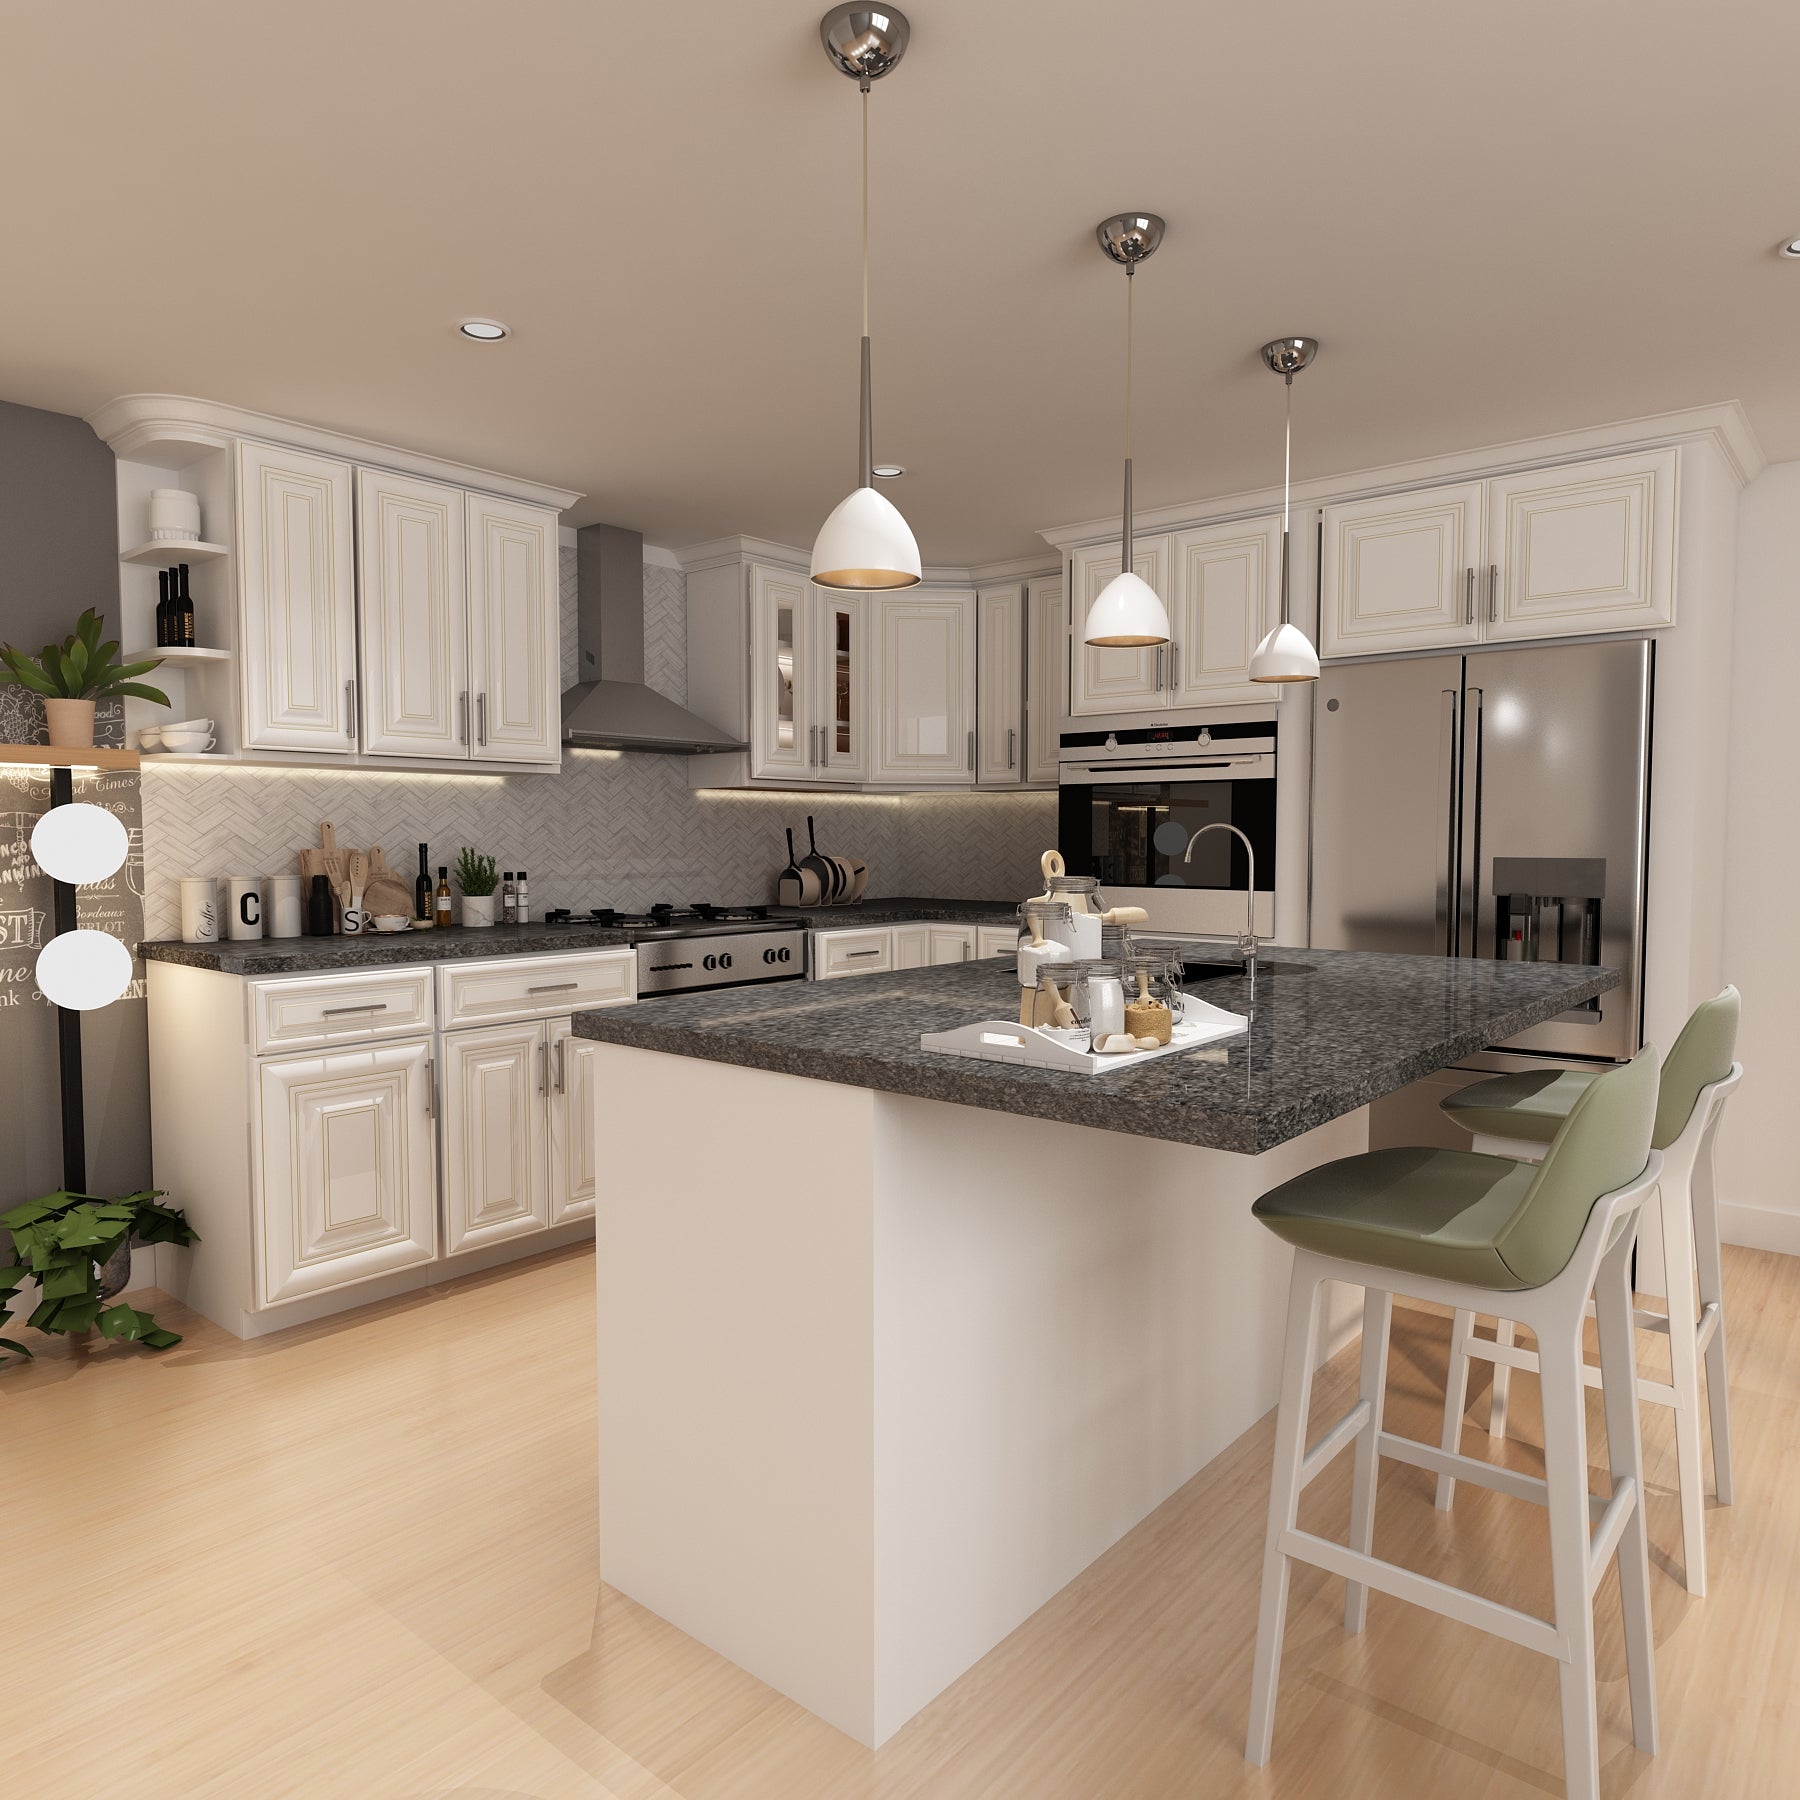 10x10 Kitchen Layout Design - Charleston White Cabinets